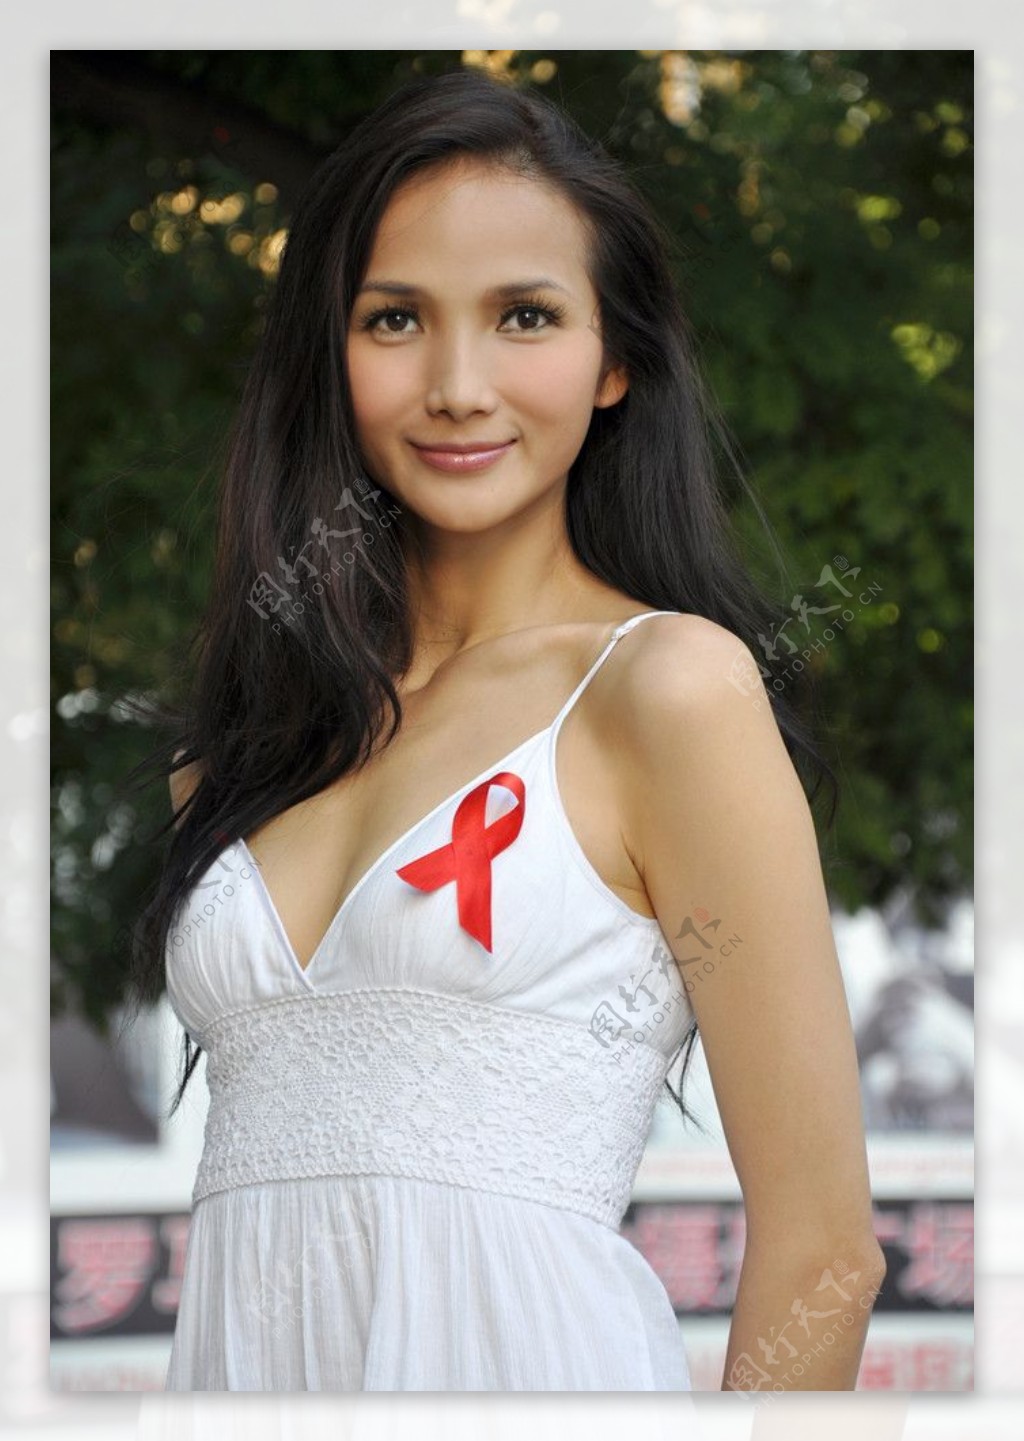 黄超燕国际禁毒日预防艾滋病形象大使图片